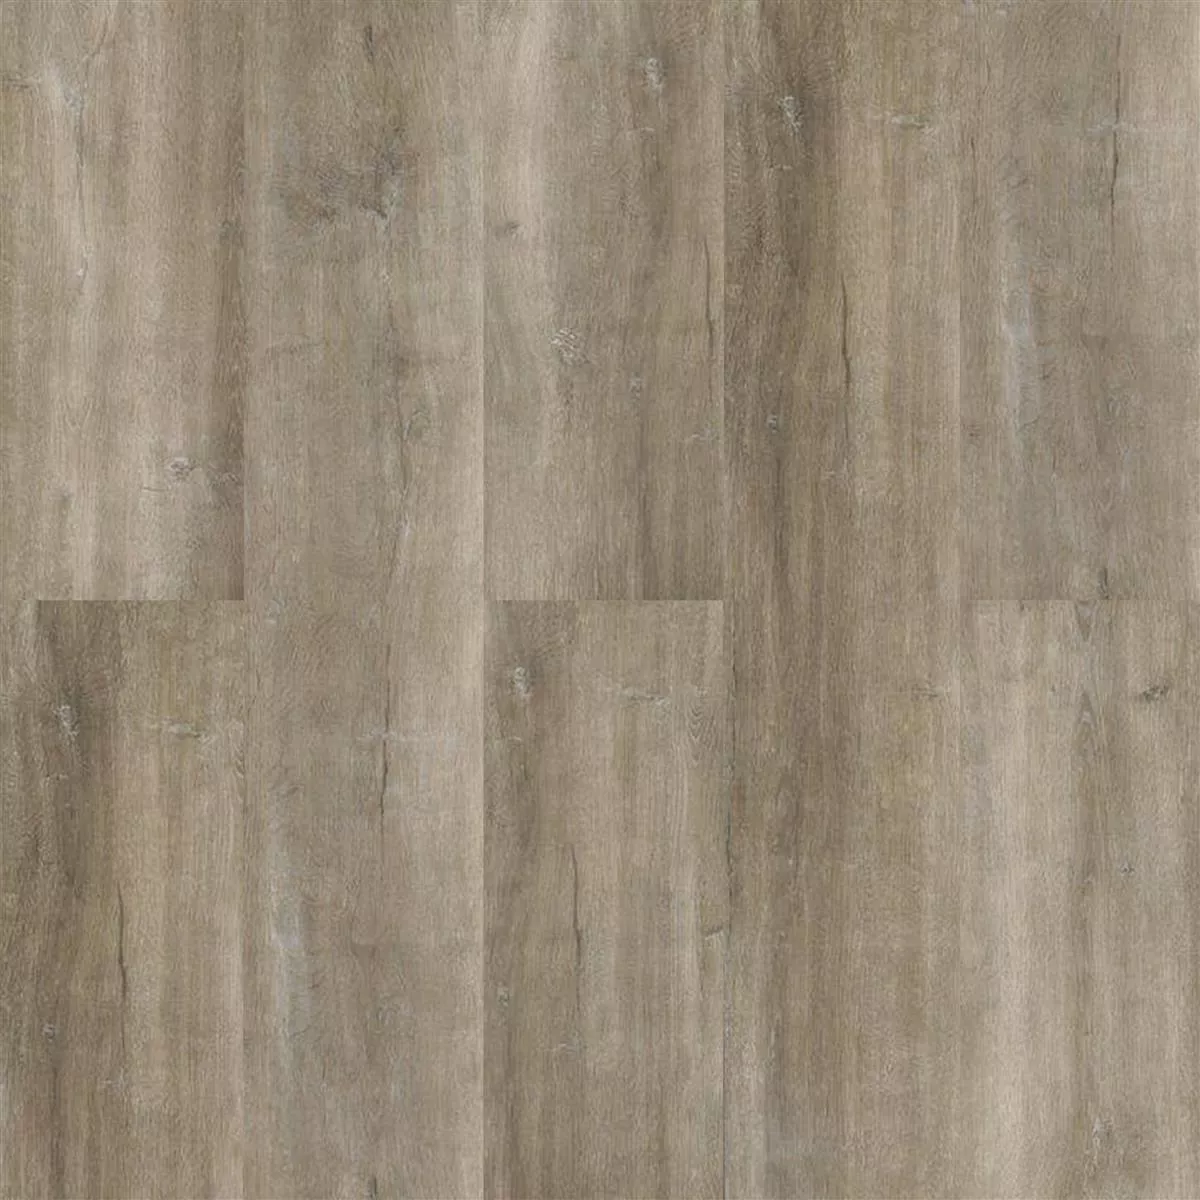 Vinyl Floor Tiles Click System Elderwood Beige Grey 17,2x121cm